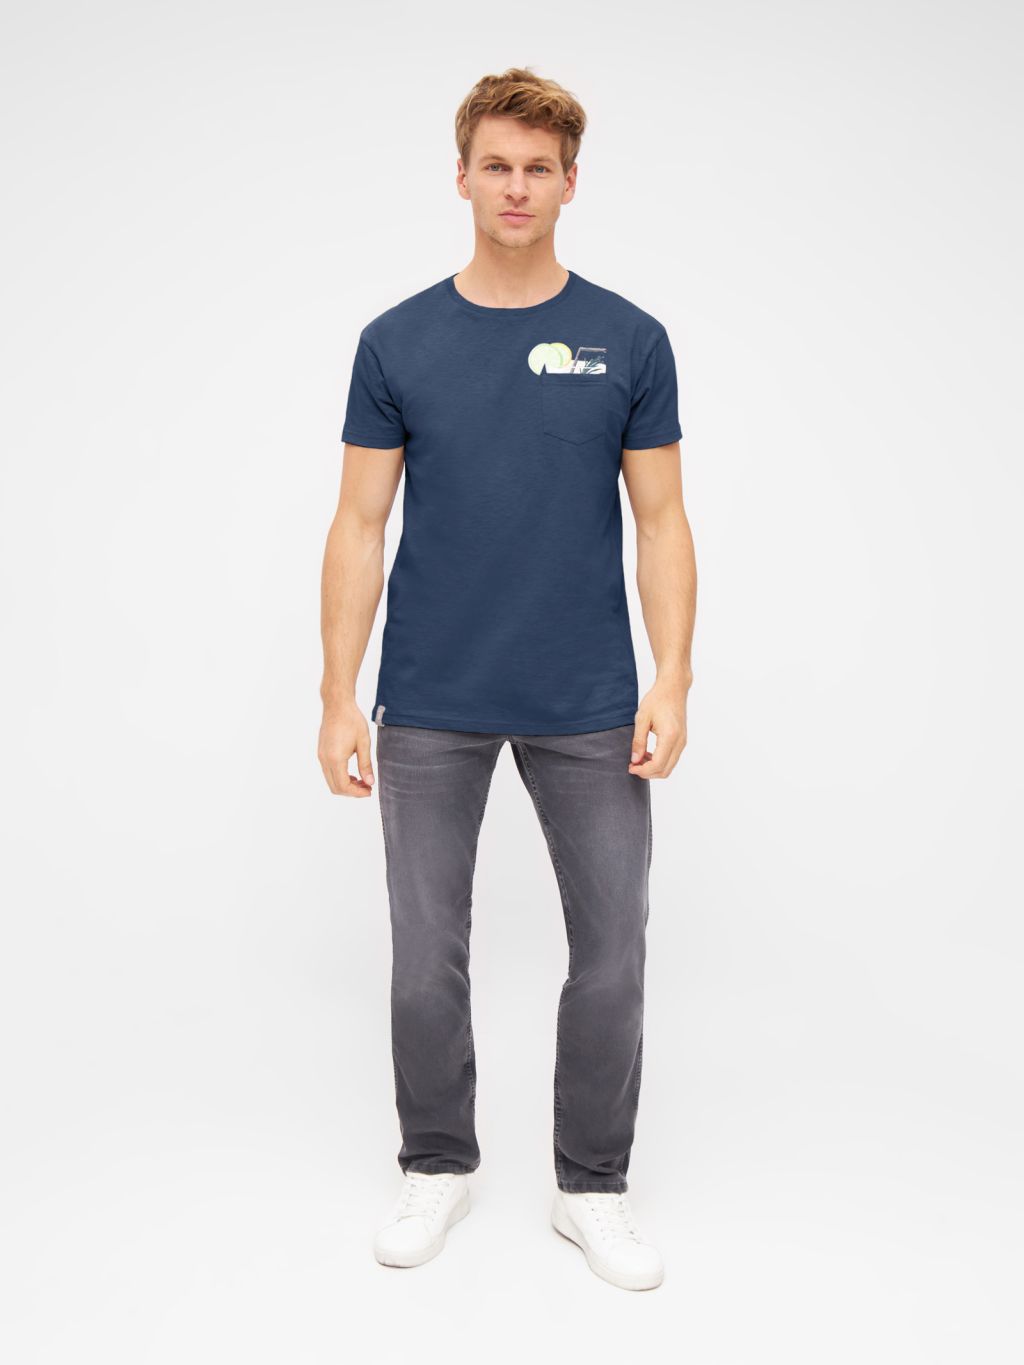 T-Shirt Taschencocktail Navy S